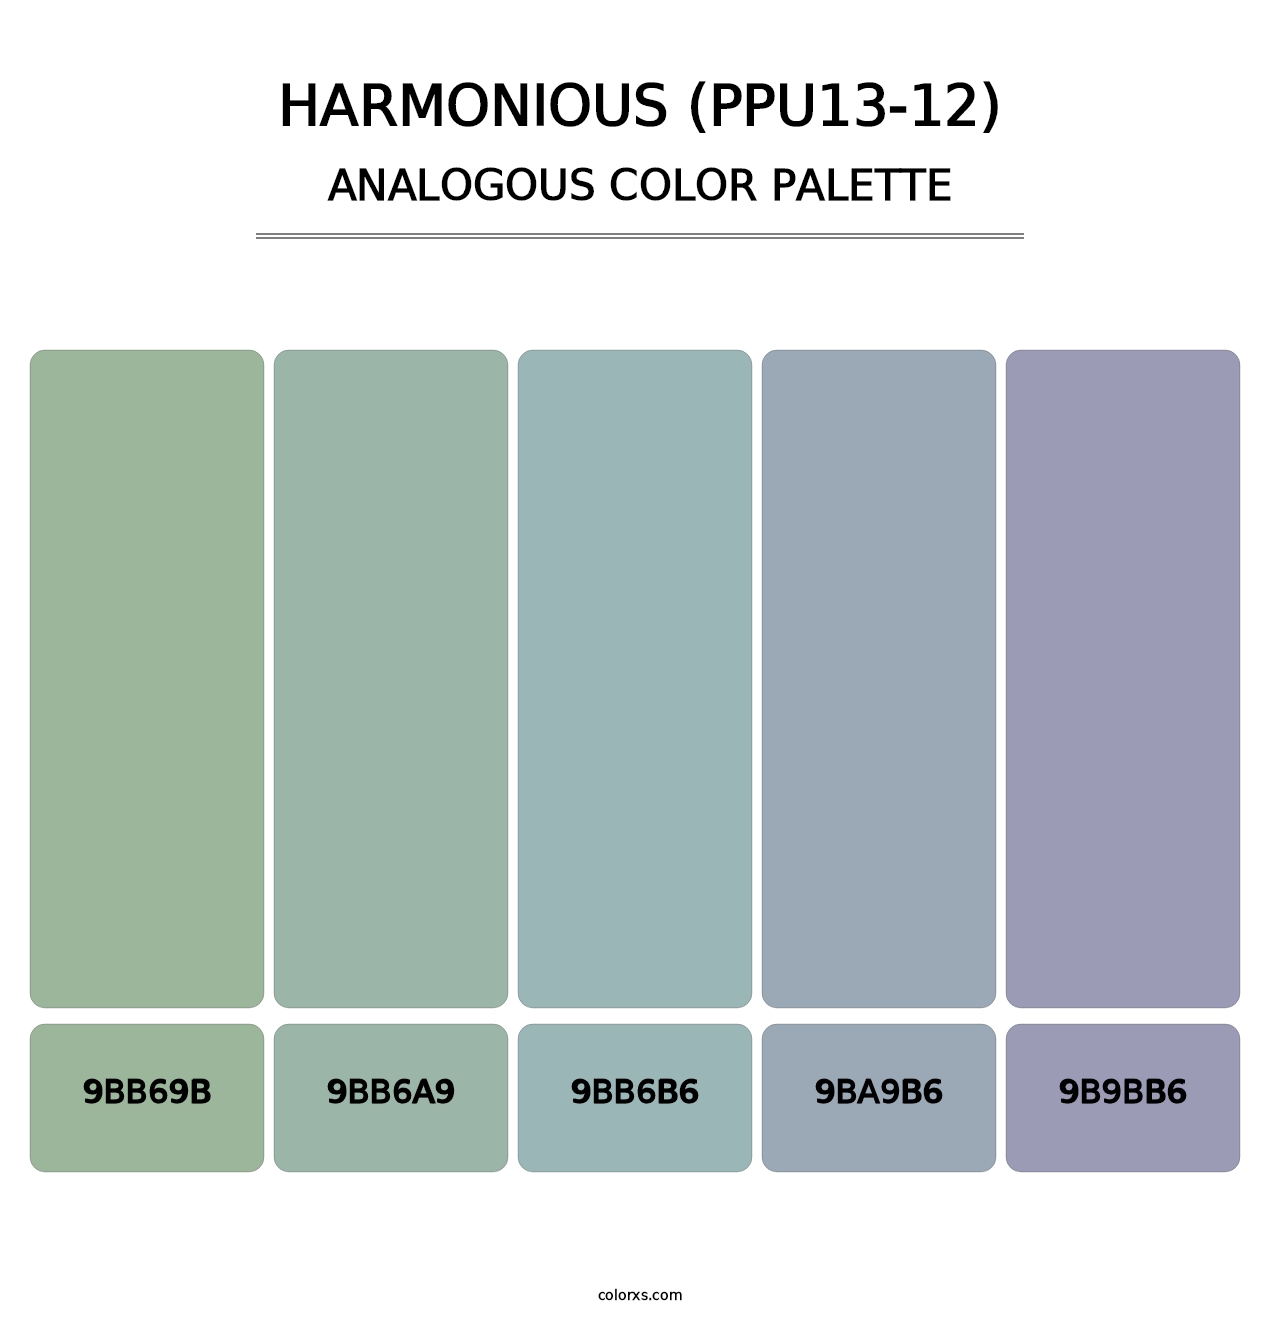 Harmonious (PPU13-12) - Analogous Color Palette